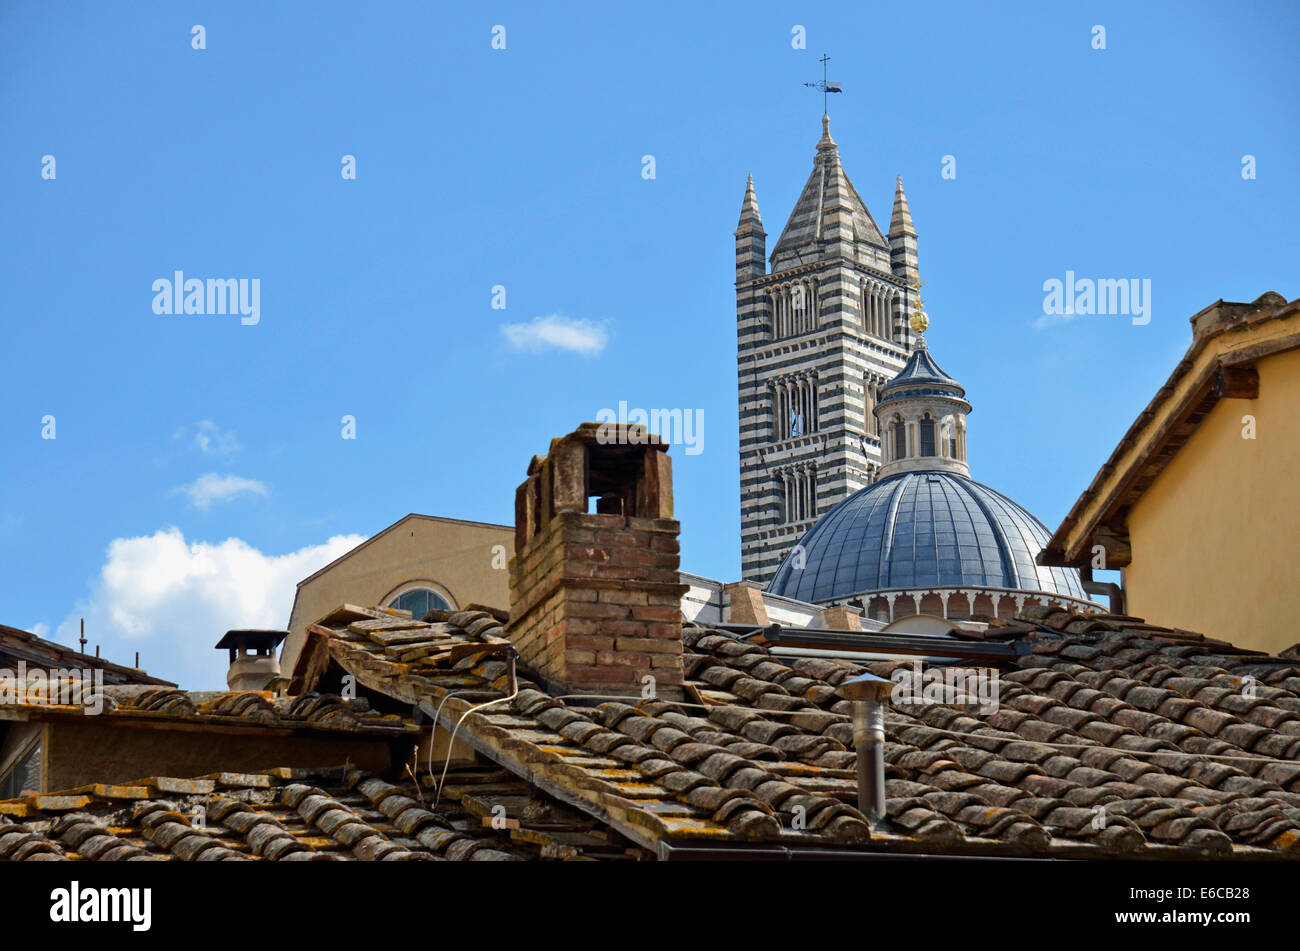 Sienne, Toscane, Italie, Europe - clocher de la cathédrale Duomo di Siena à travers les toits rouges Banque D'Images